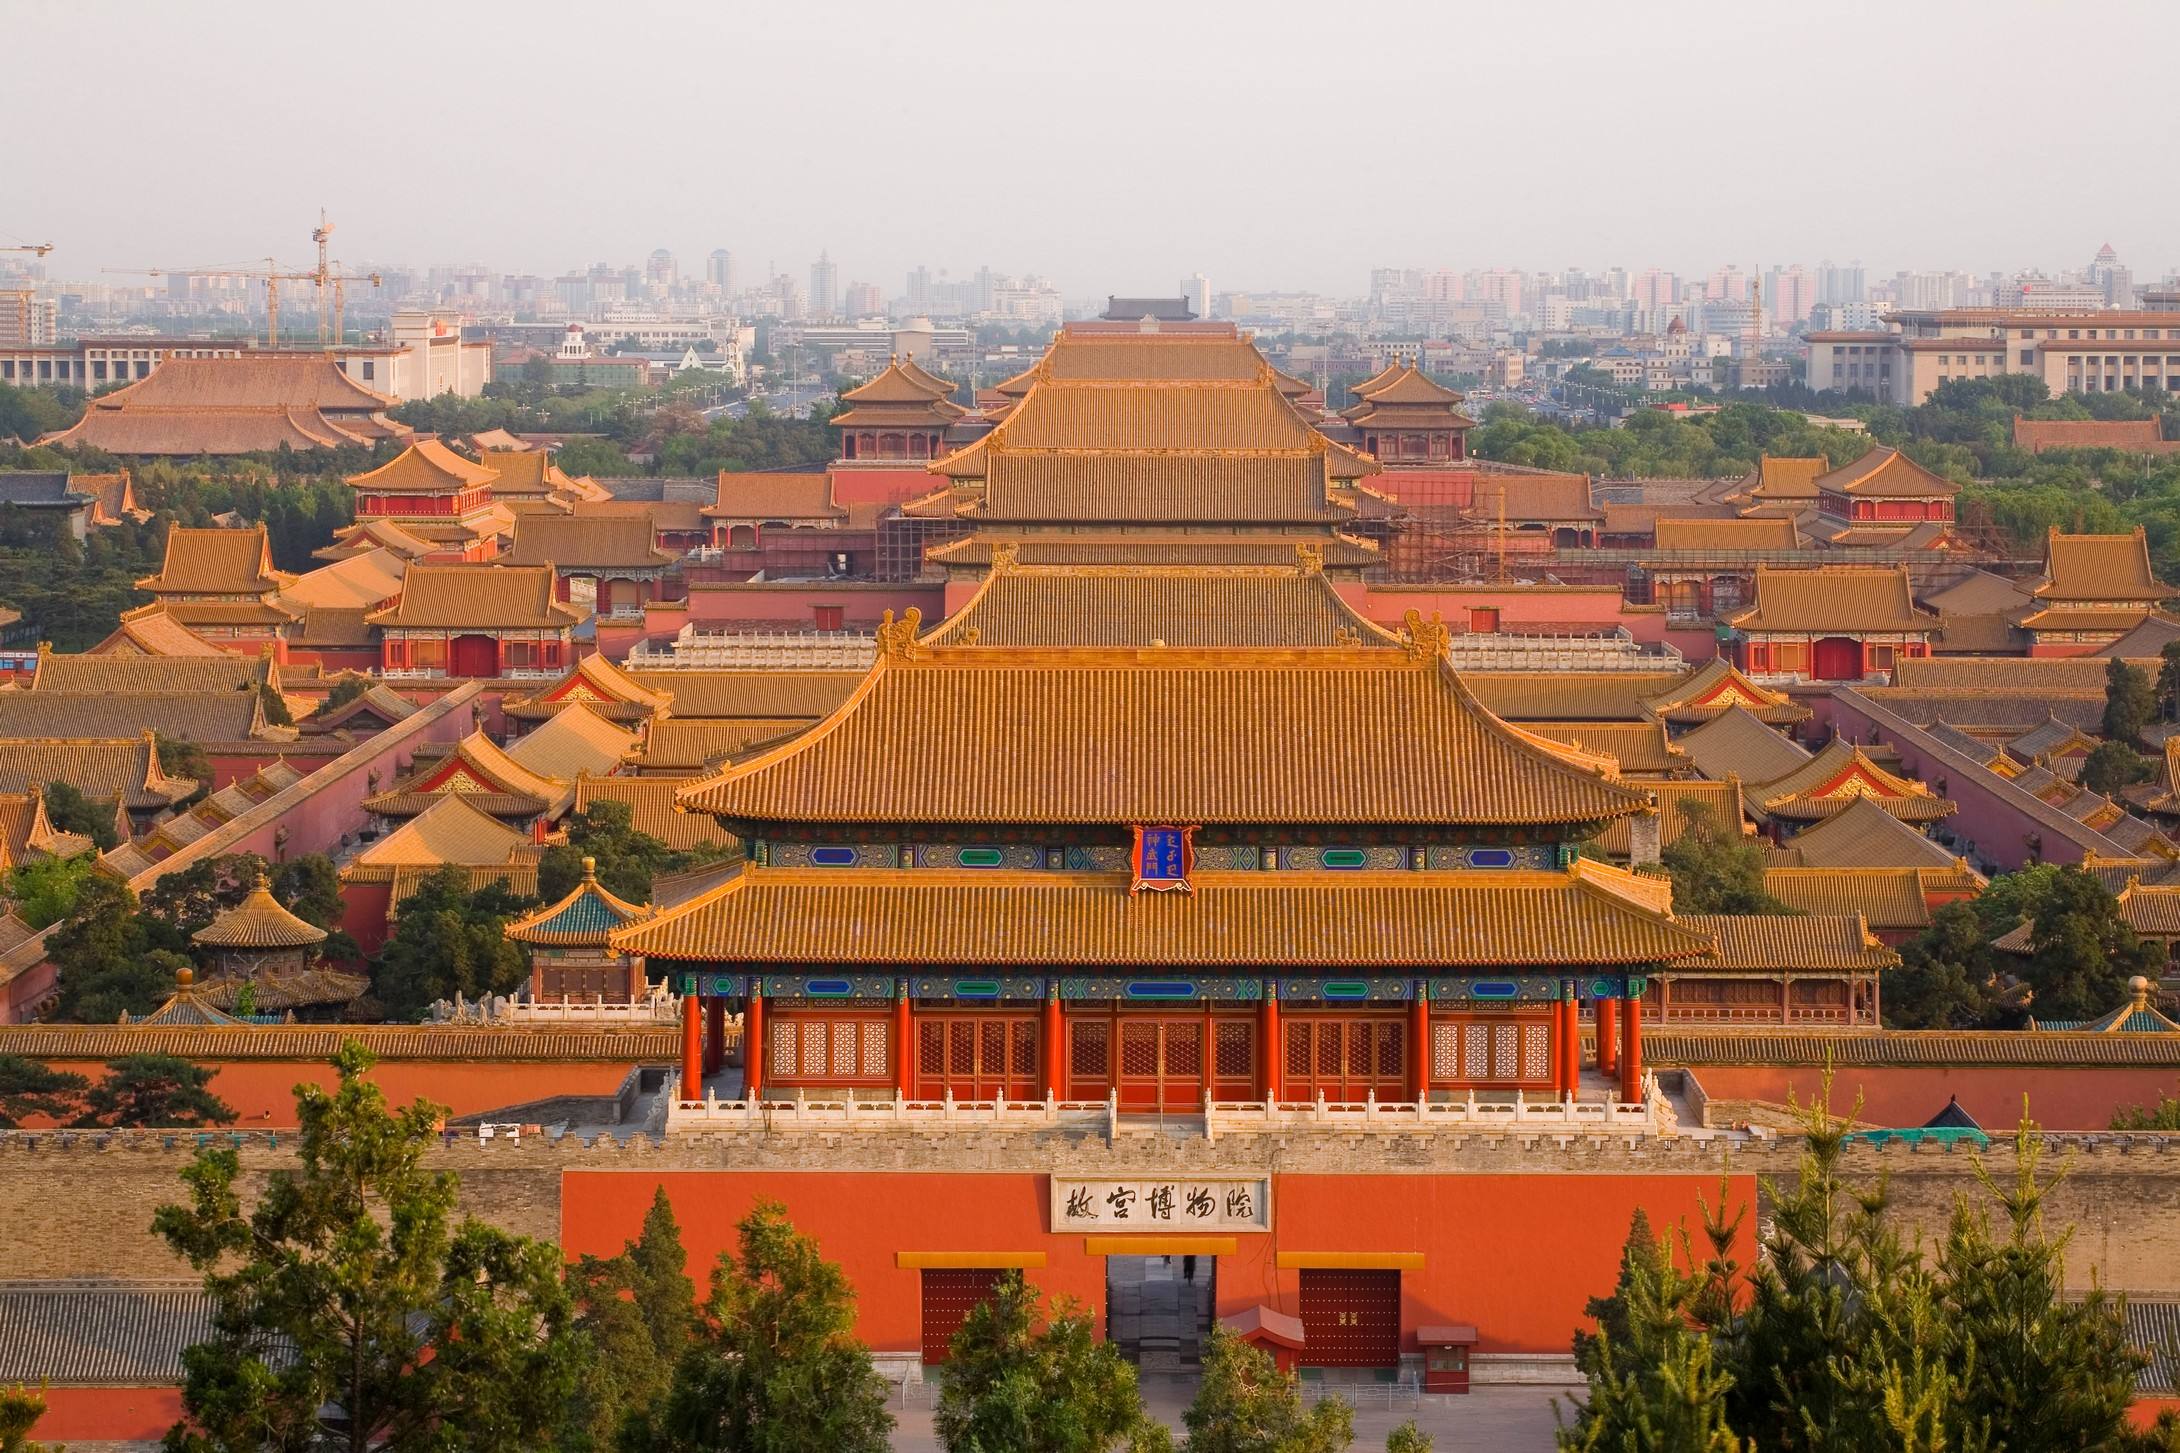 北京故宫是哪个朝代建的 北京故宫最早建于哪个朝代